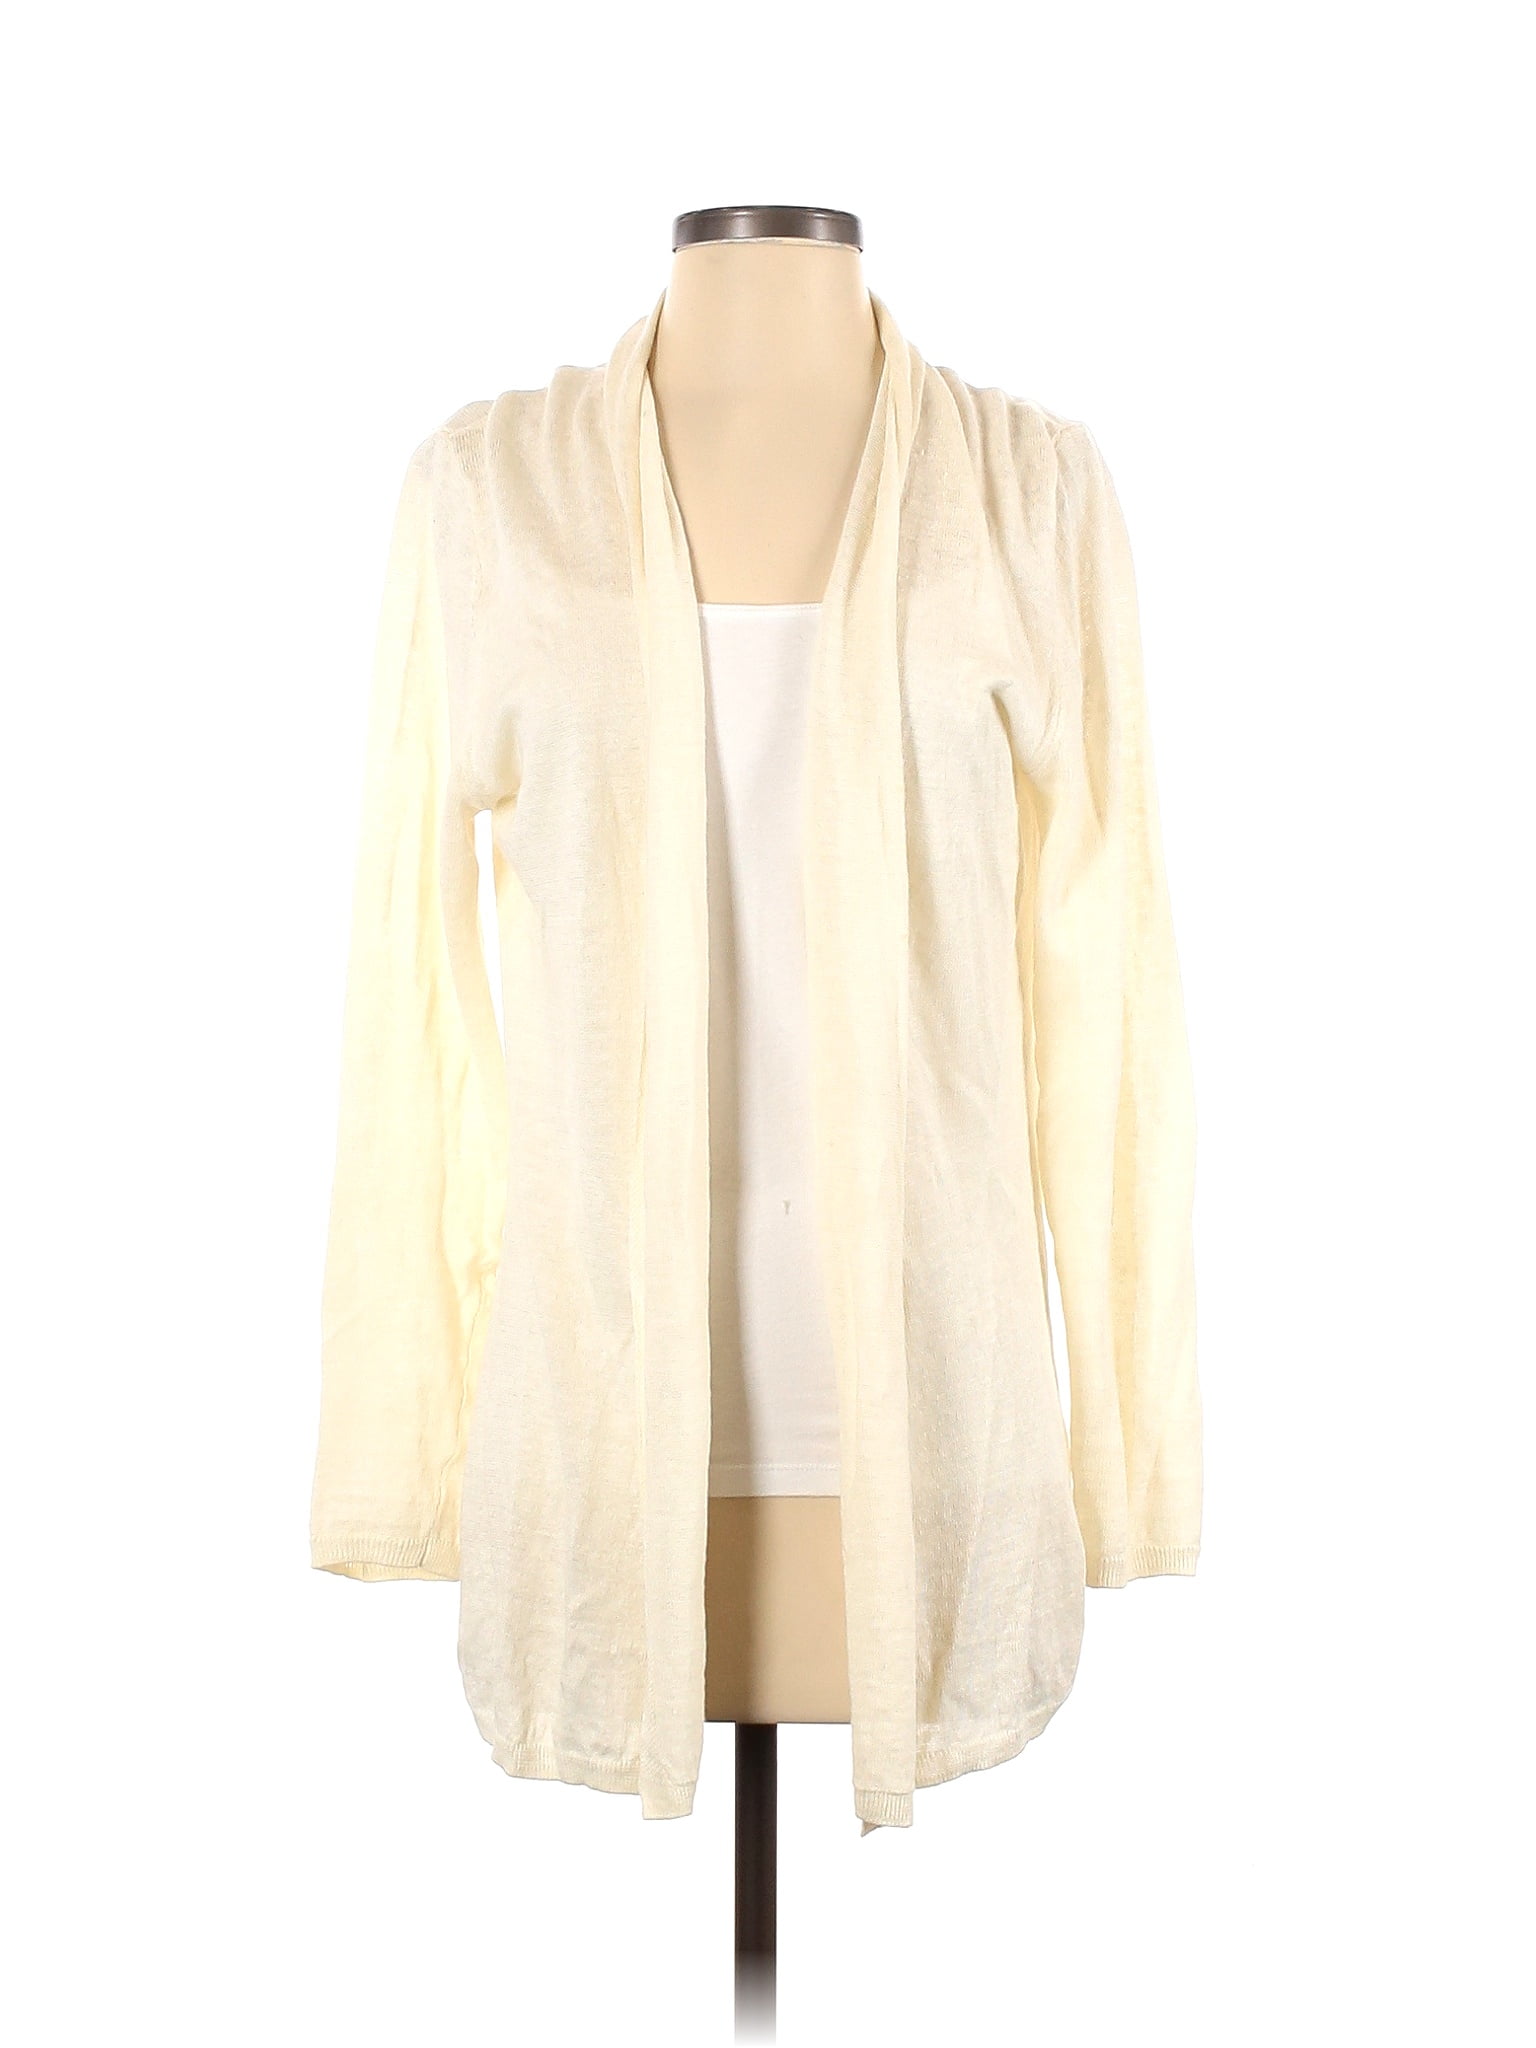 Rachel Zoe 100% Linen Color Block Solid Ivory Cardigan Size M - 83% off ...